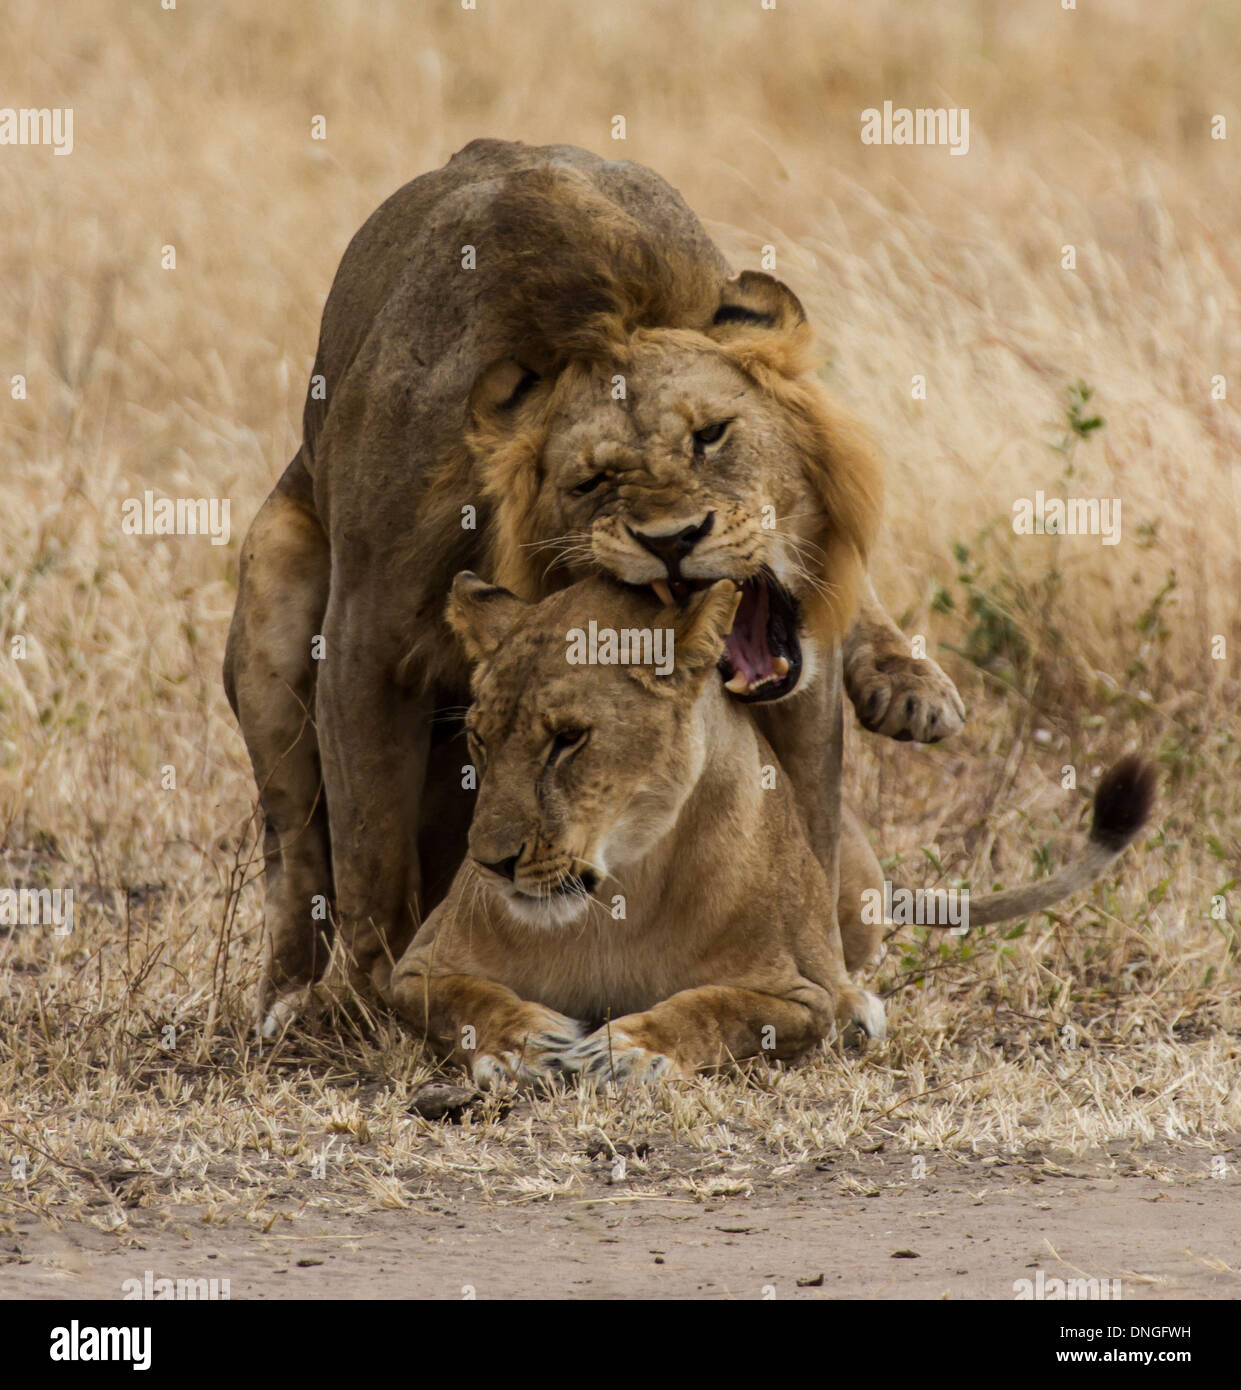 Les lions à l'accouplement, la Tanzanie Tarangire National Park Banque D'Images